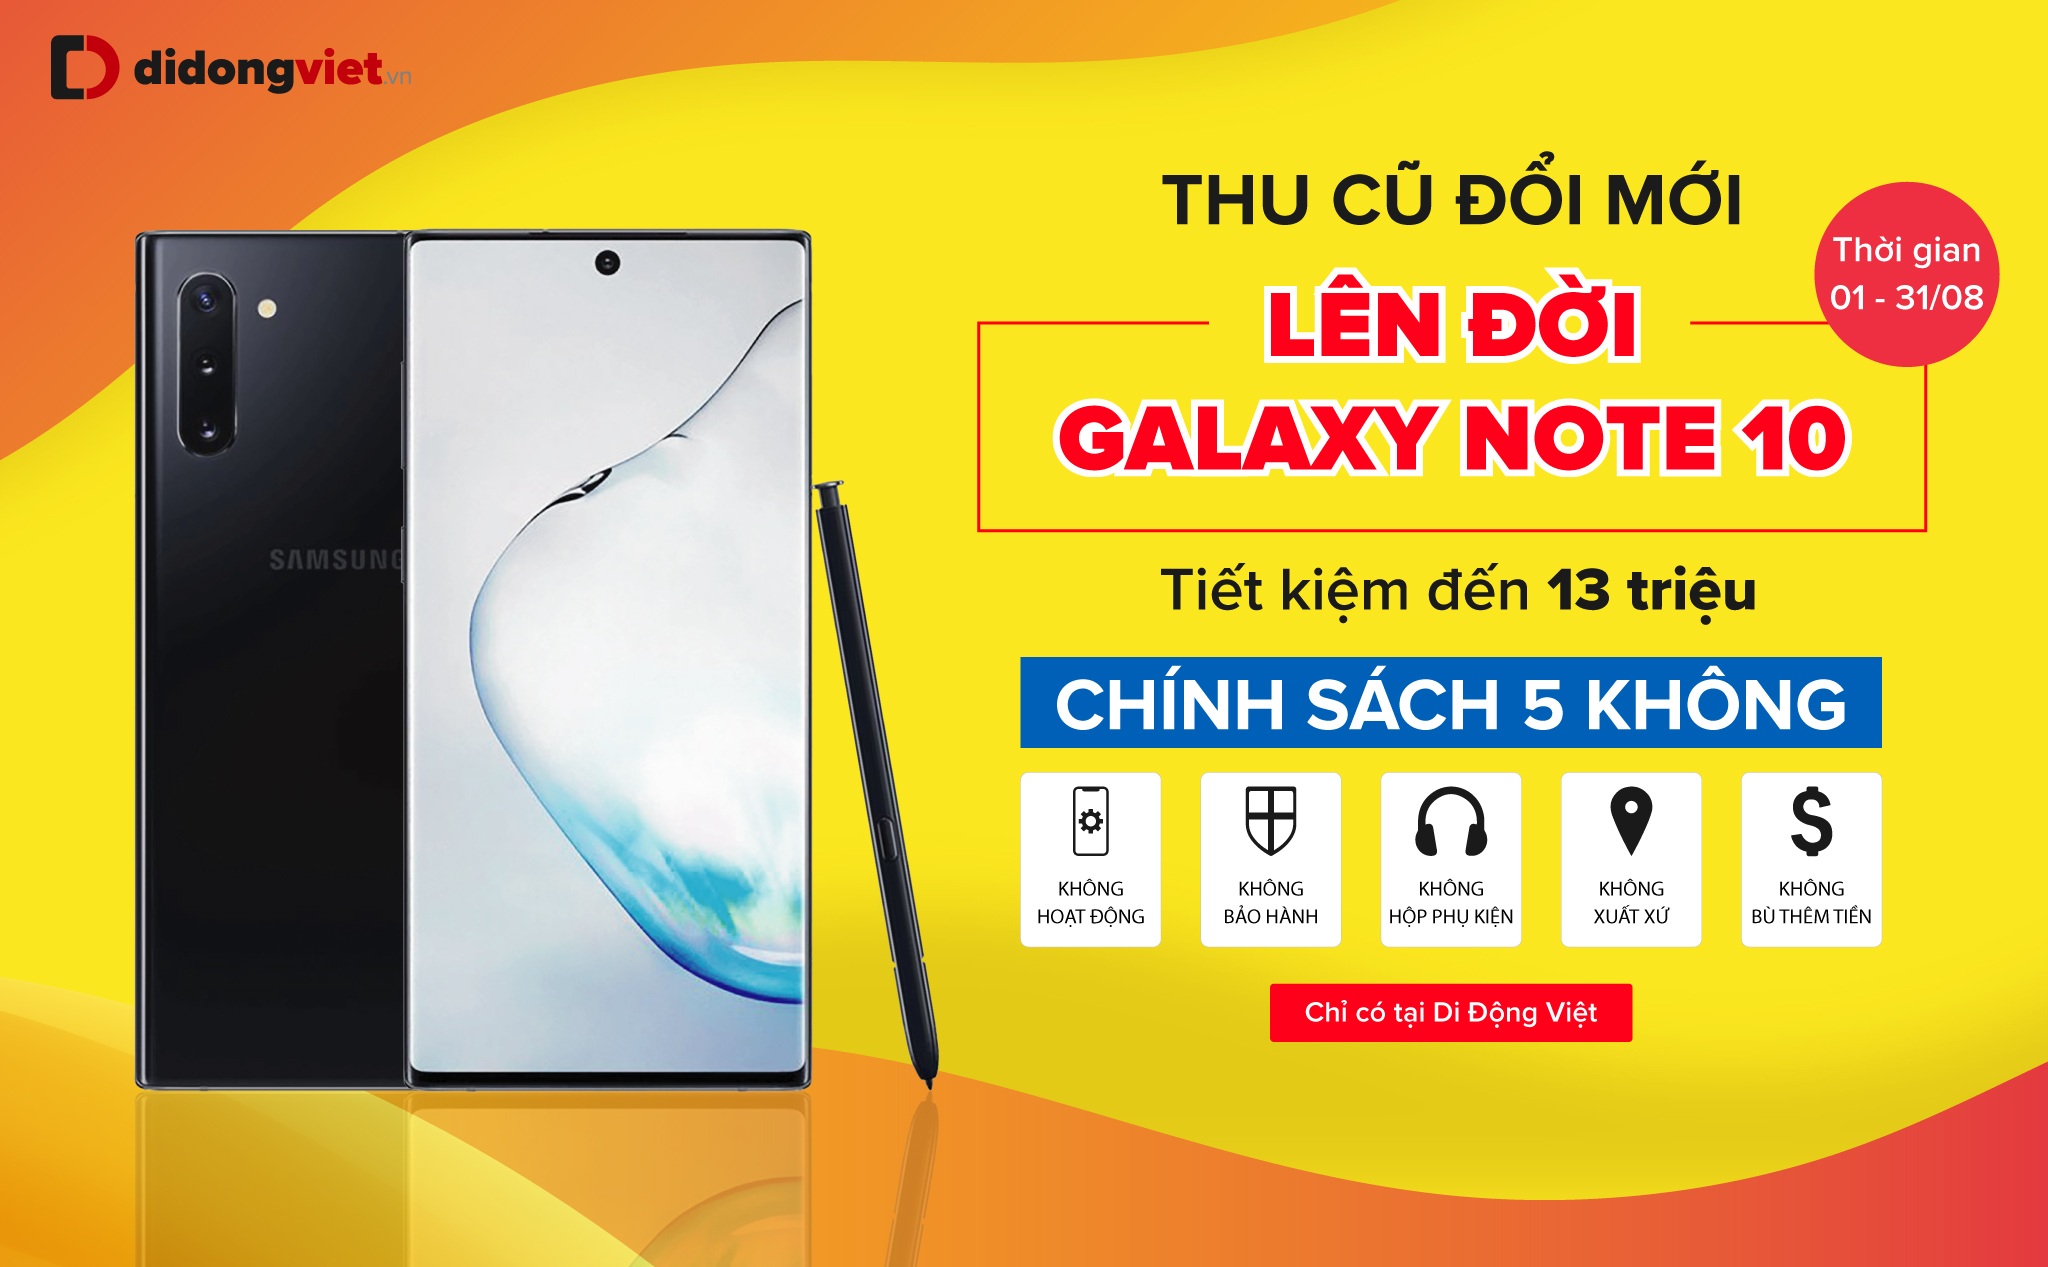 [QC] Đổi máy cũ lấy Galaxy Note 10, Note 10+ tiết kiệm đến 13 triệu tại Di Động Việt